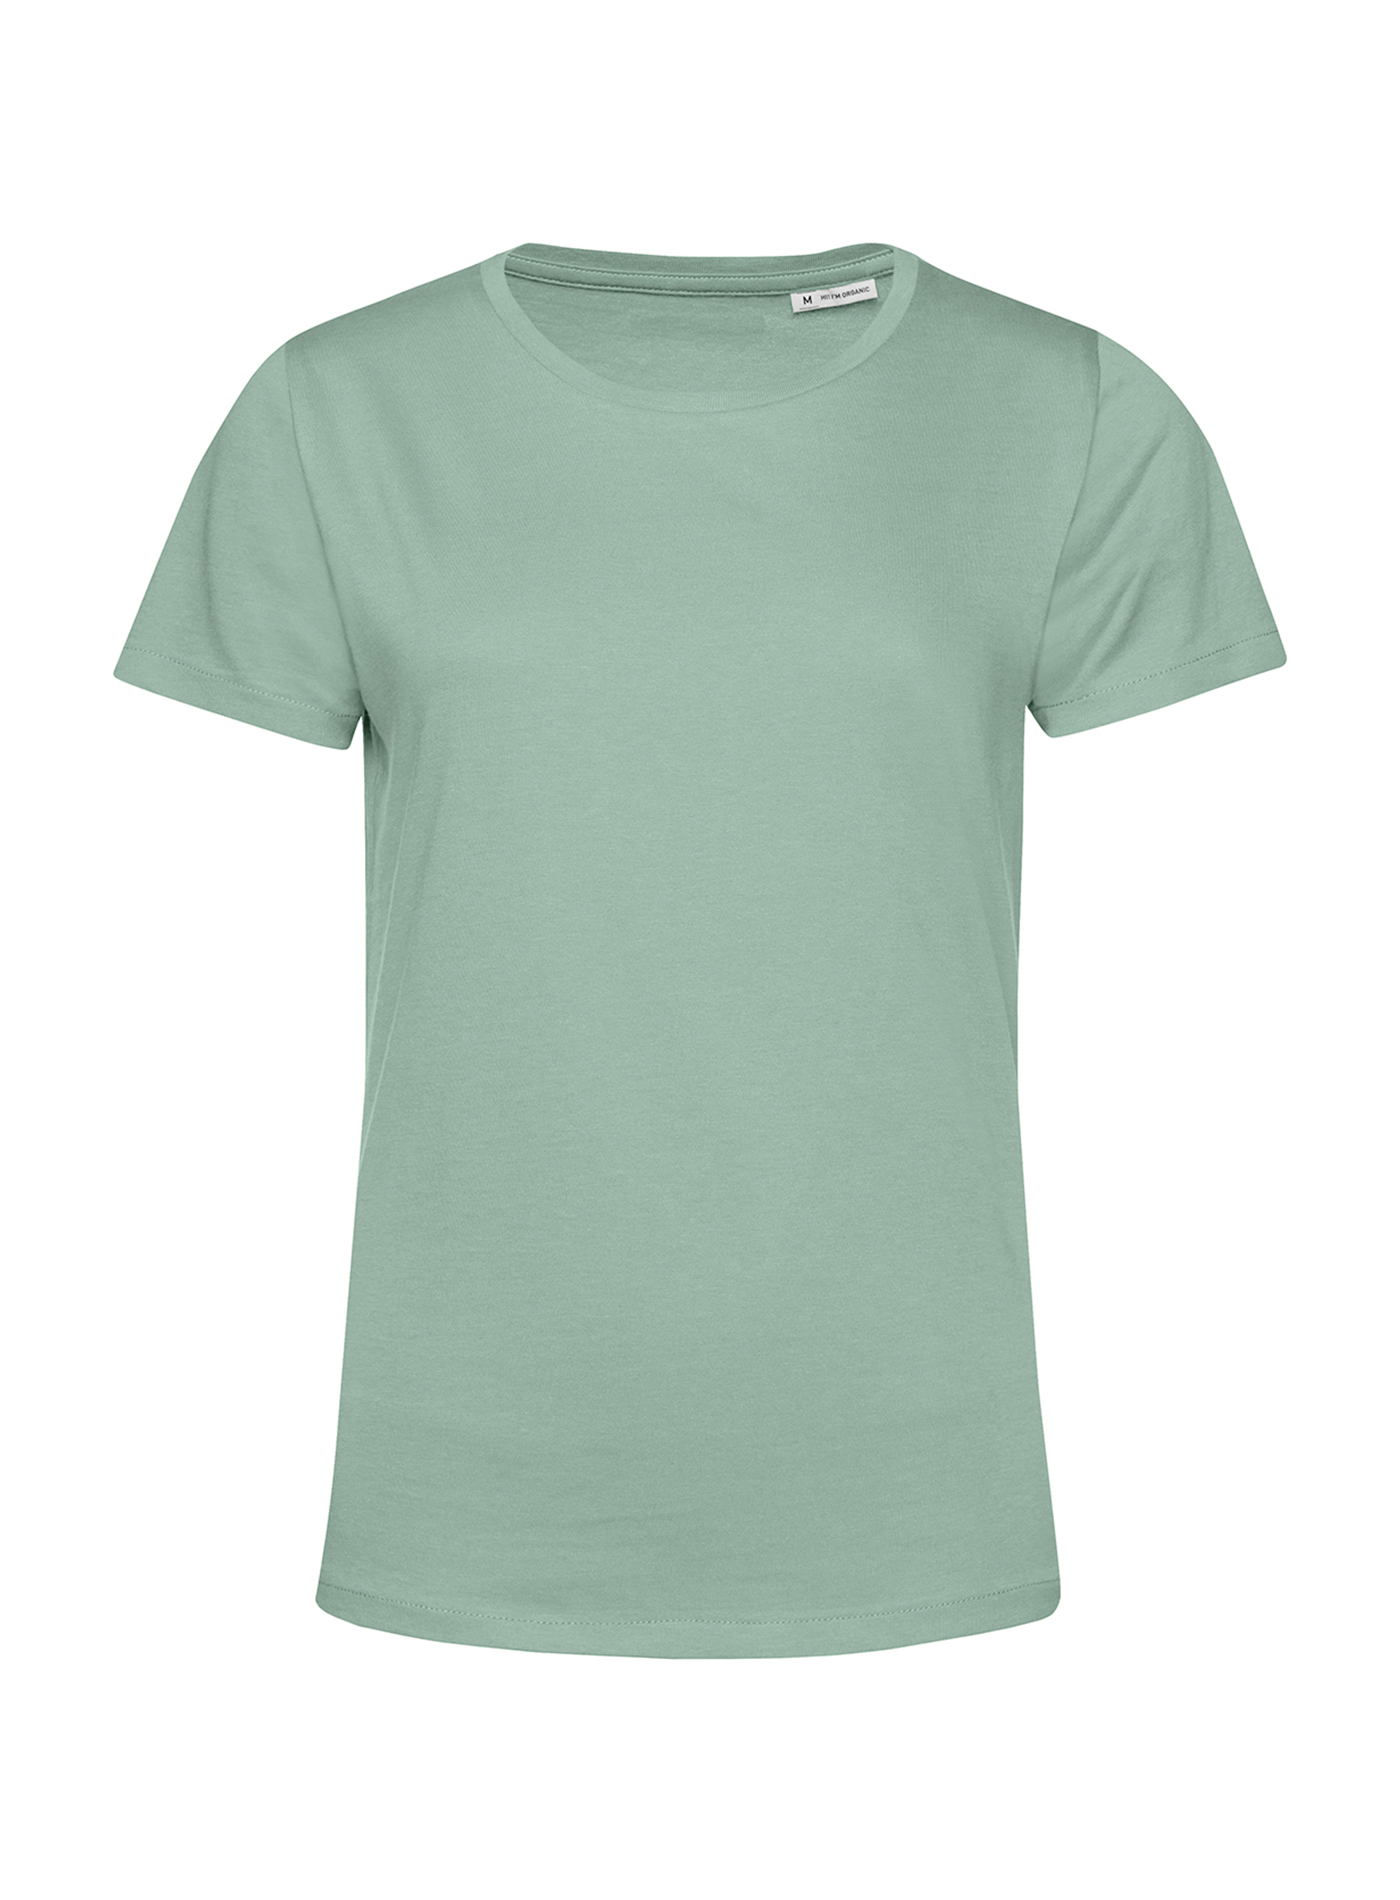 Dámské tričko B&C Collection Organic - Mentolově zelená XS